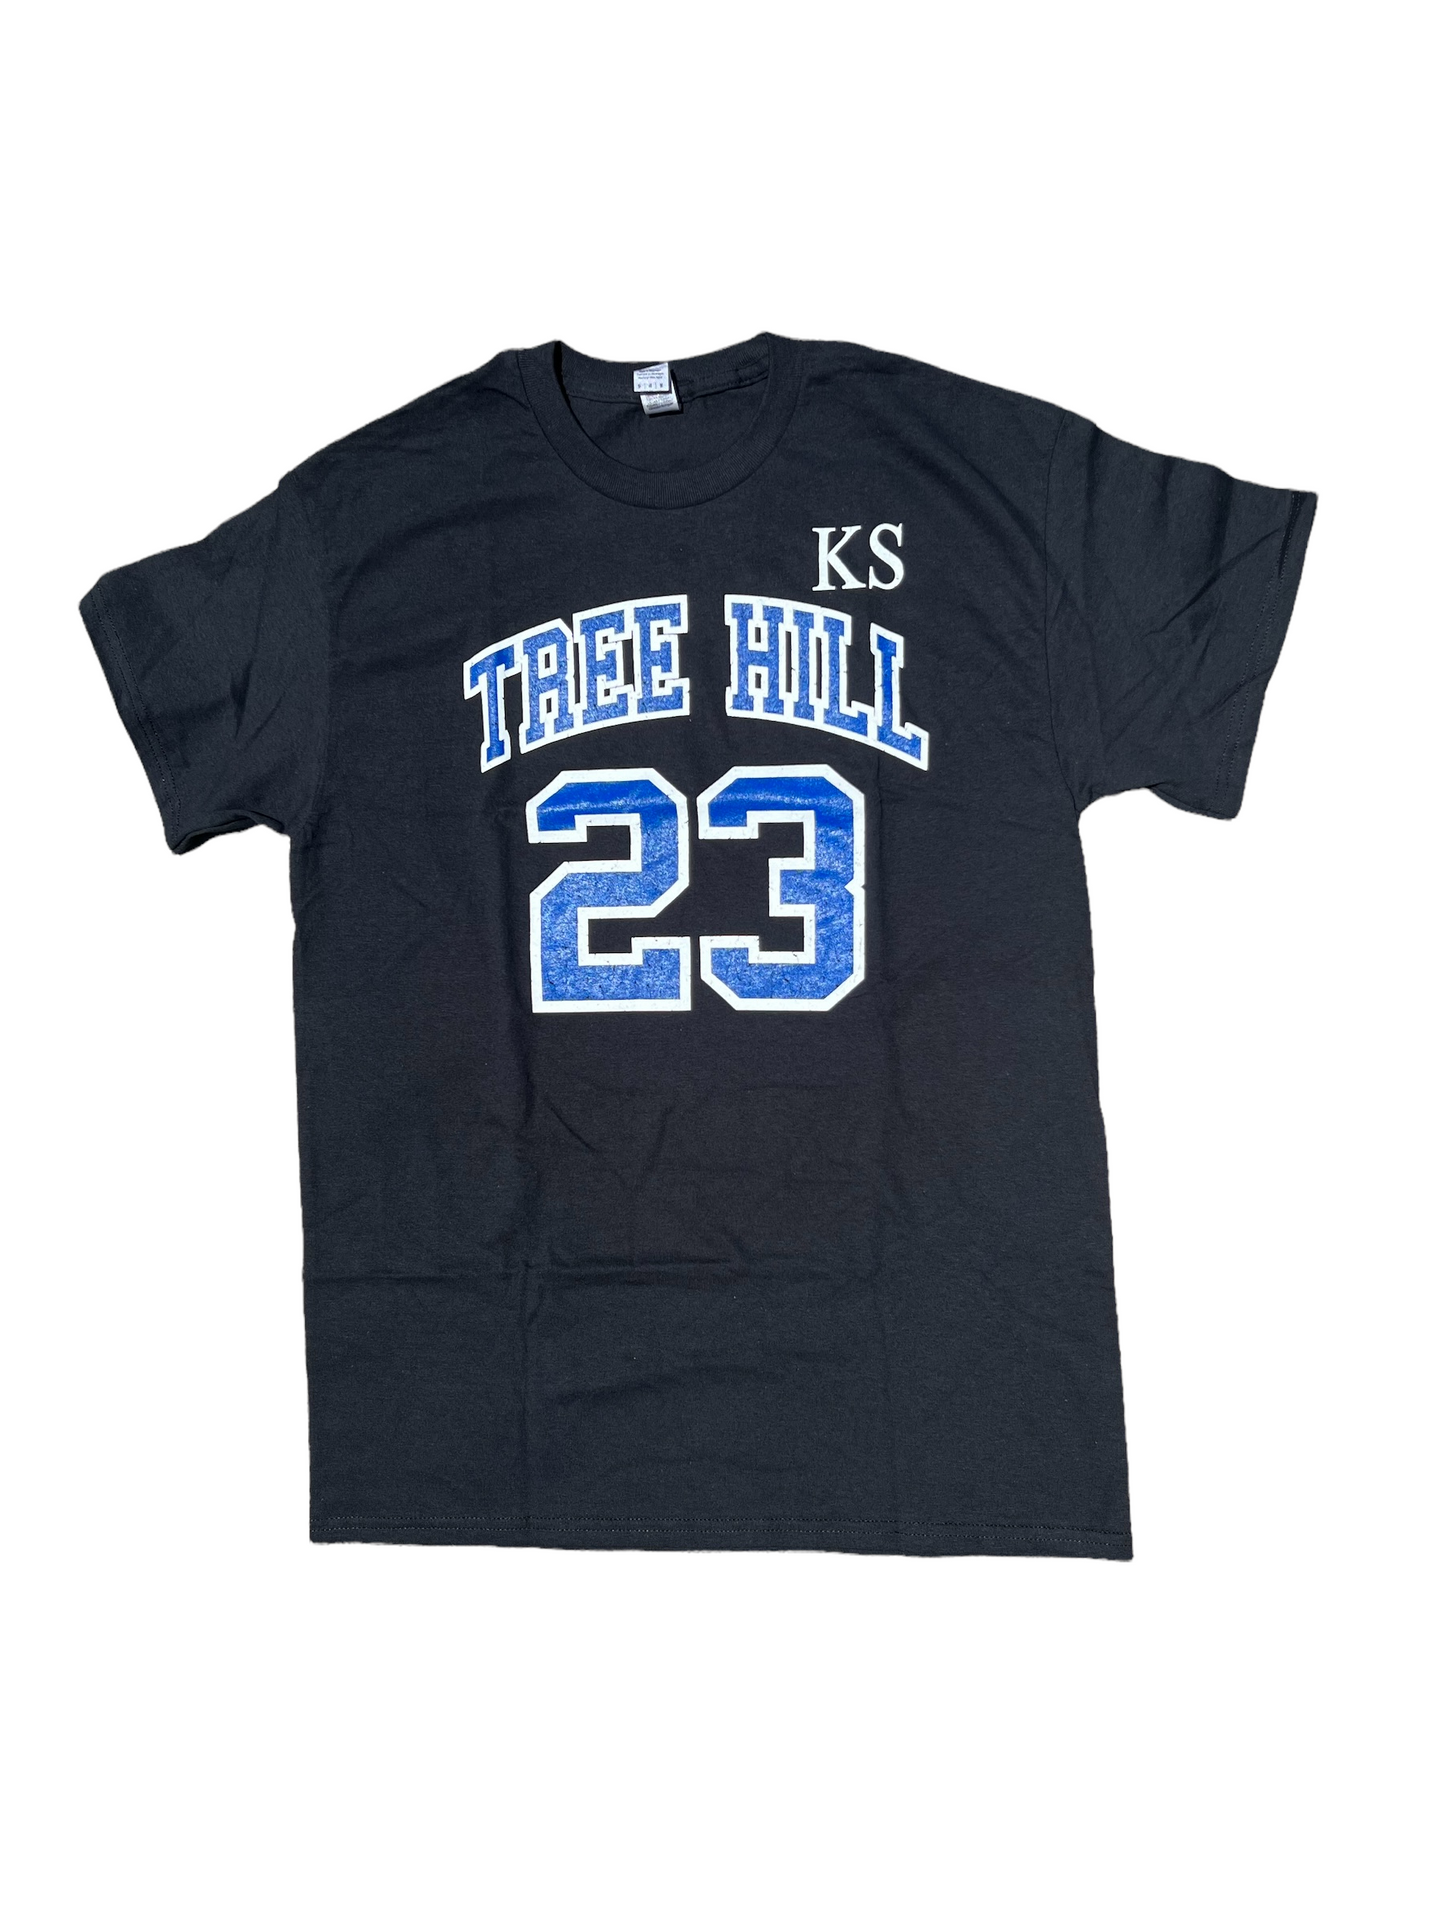 Scott 23 One Tree Hill – T Shirt – Black